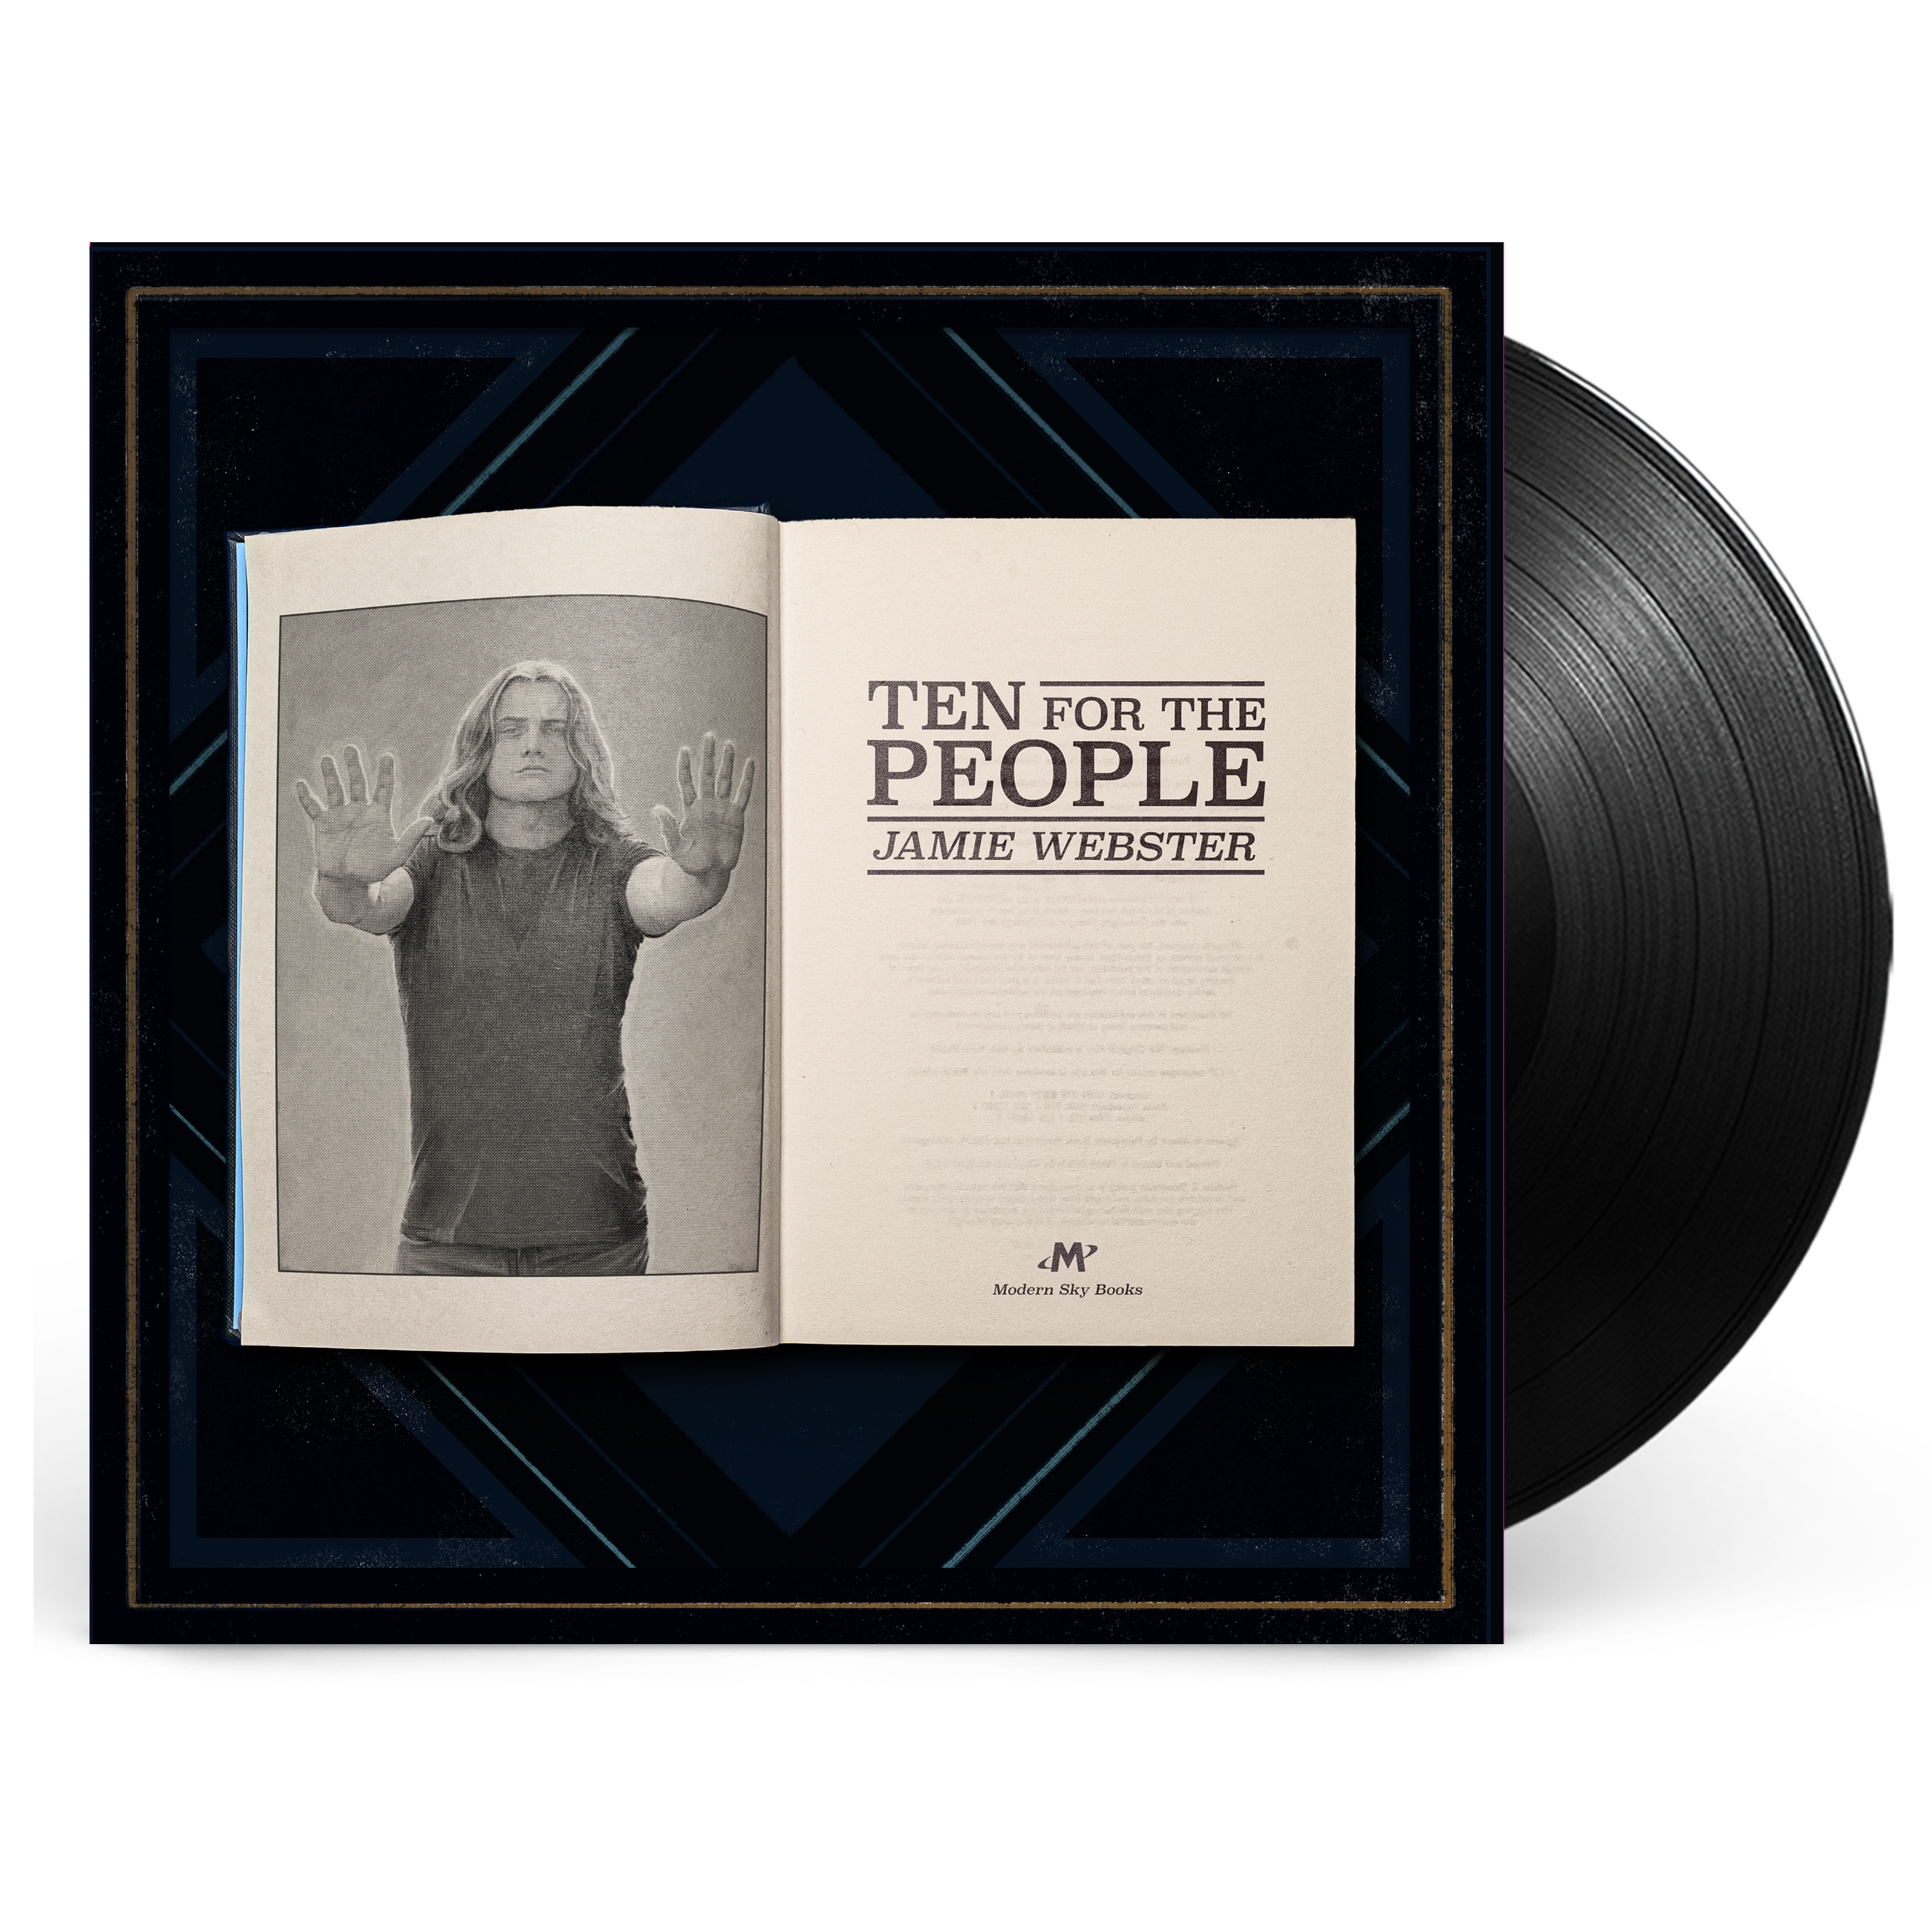 Jamie Webster - 10 For The People: Alt-Artwork Vinyl LP